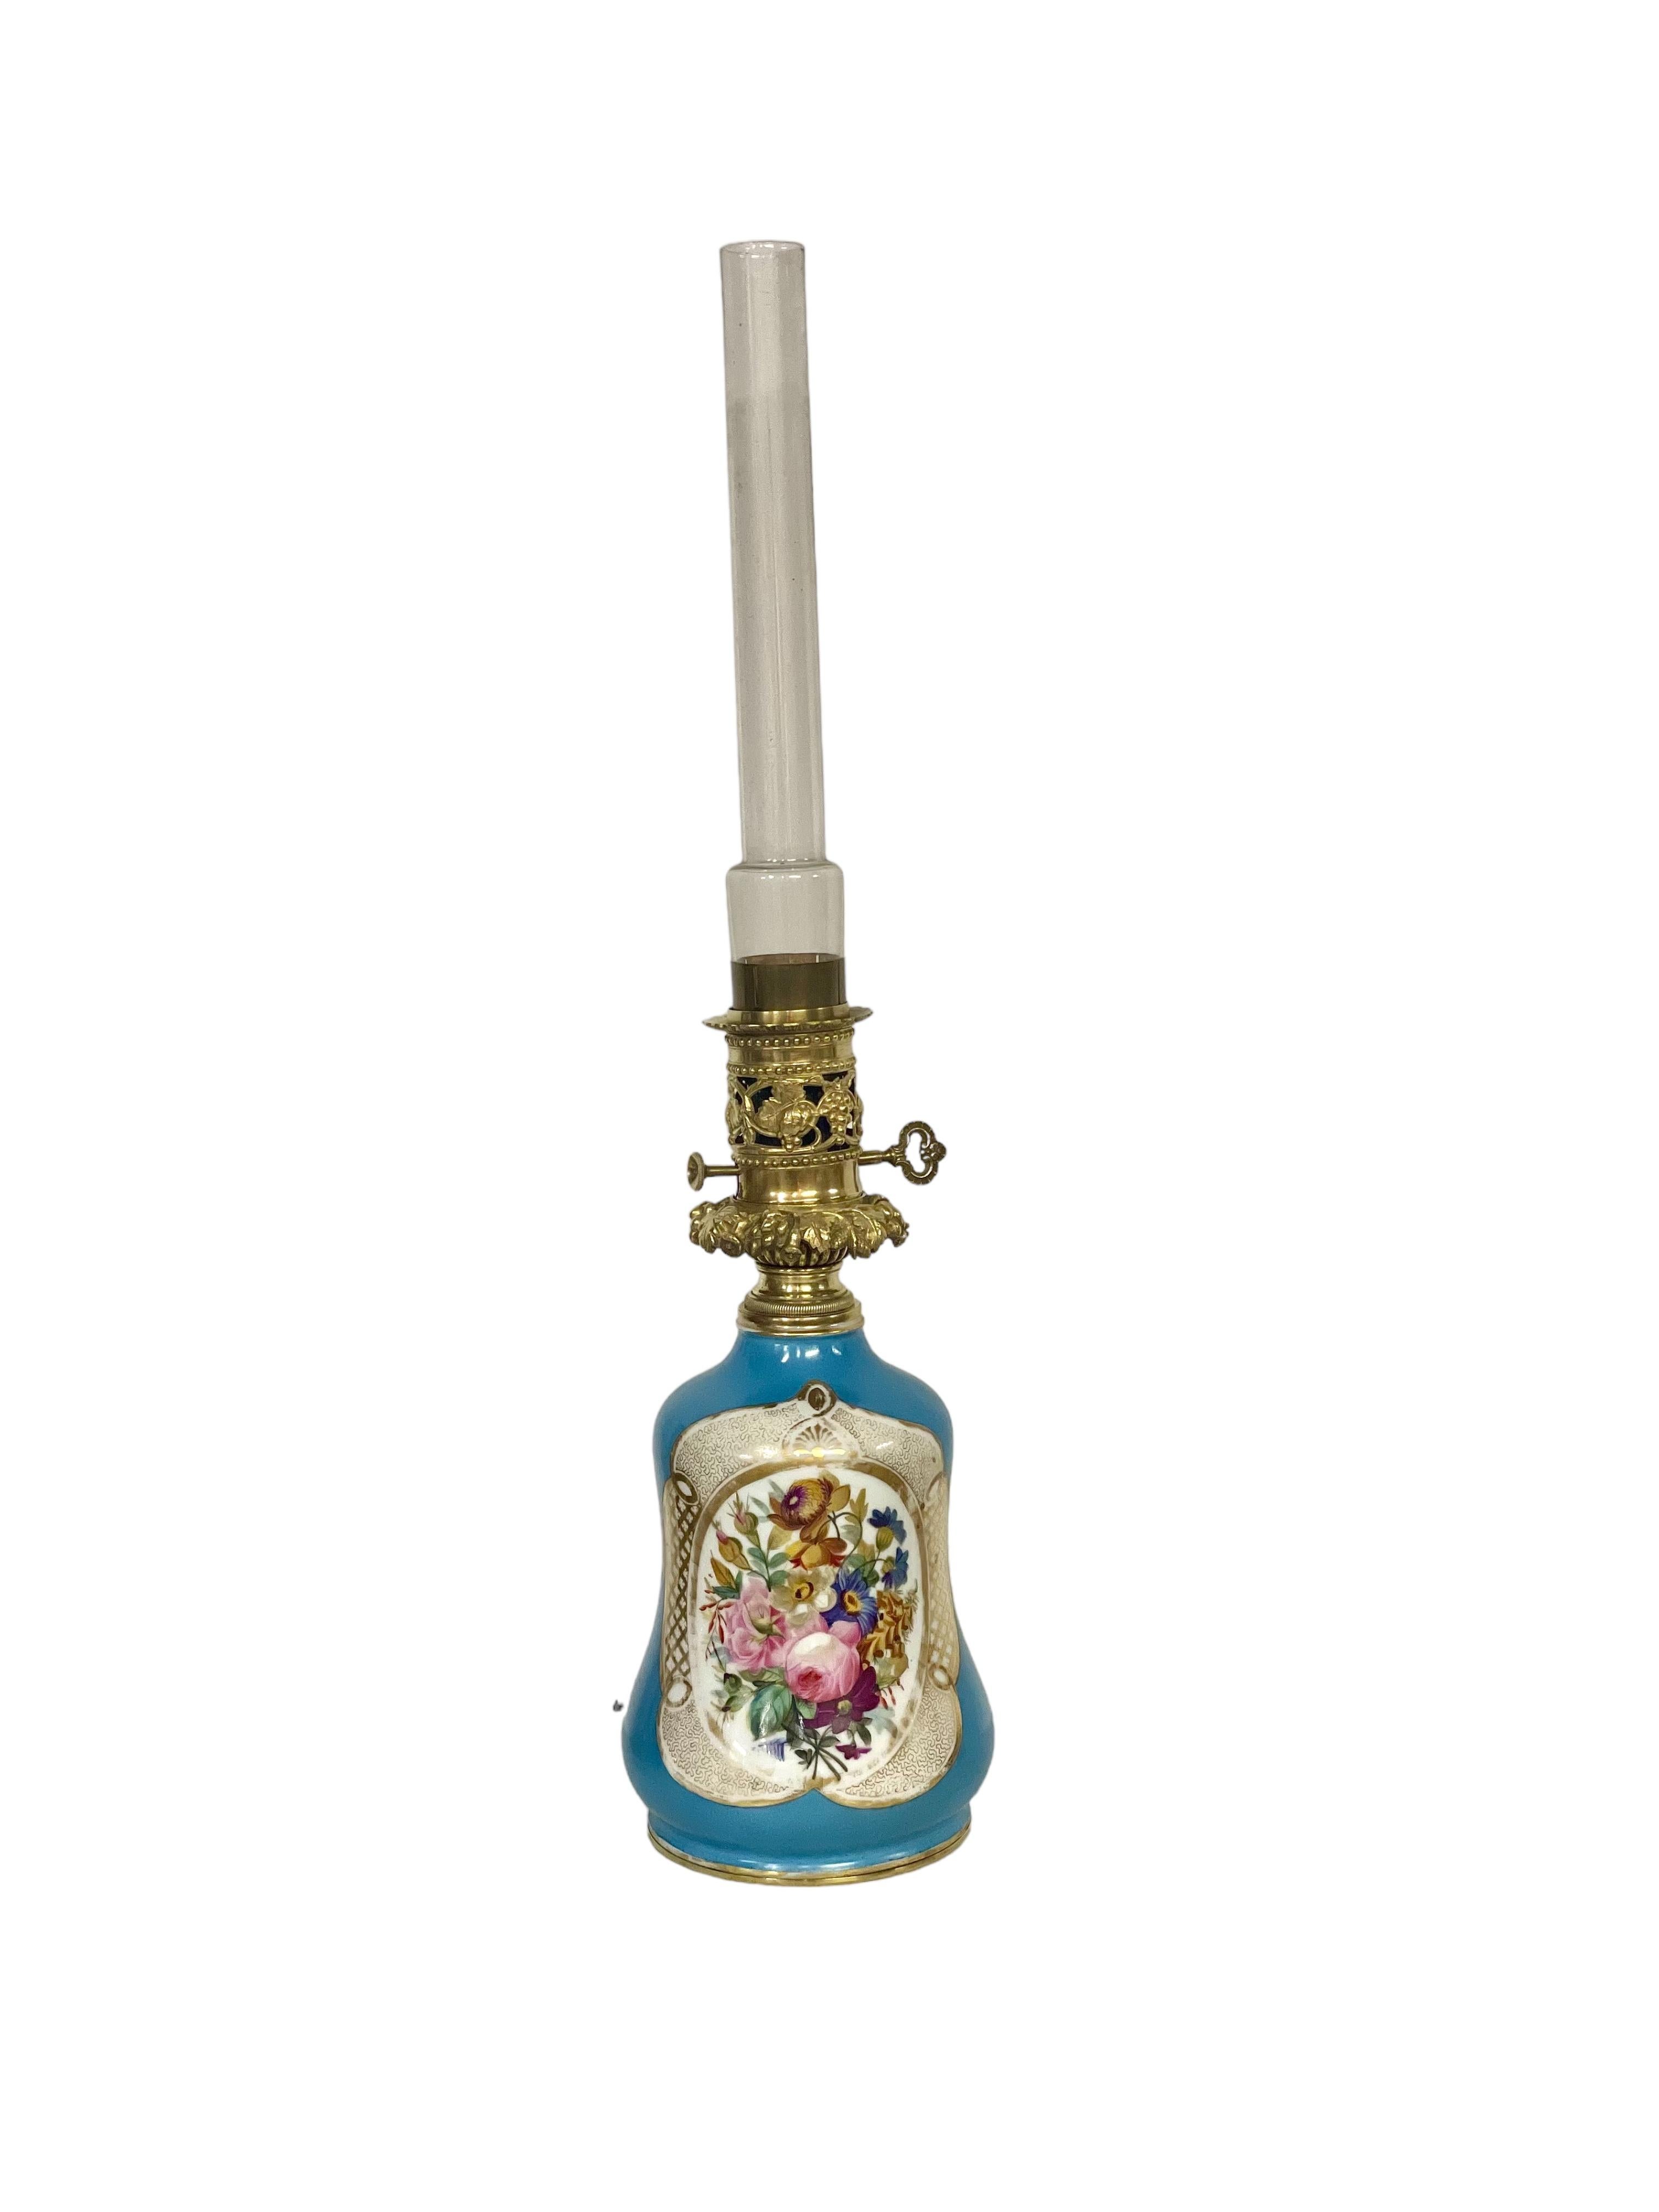 Charmante lampe à huile ancienne en bronze et porcelaine de Paris avec sa cheminée cylindrique en verre d'origine. La base de la lampe est magnifiquement peinte à la main avec un cartouche de fleurs polychromes sur un fond bleu lapis saisissant, et